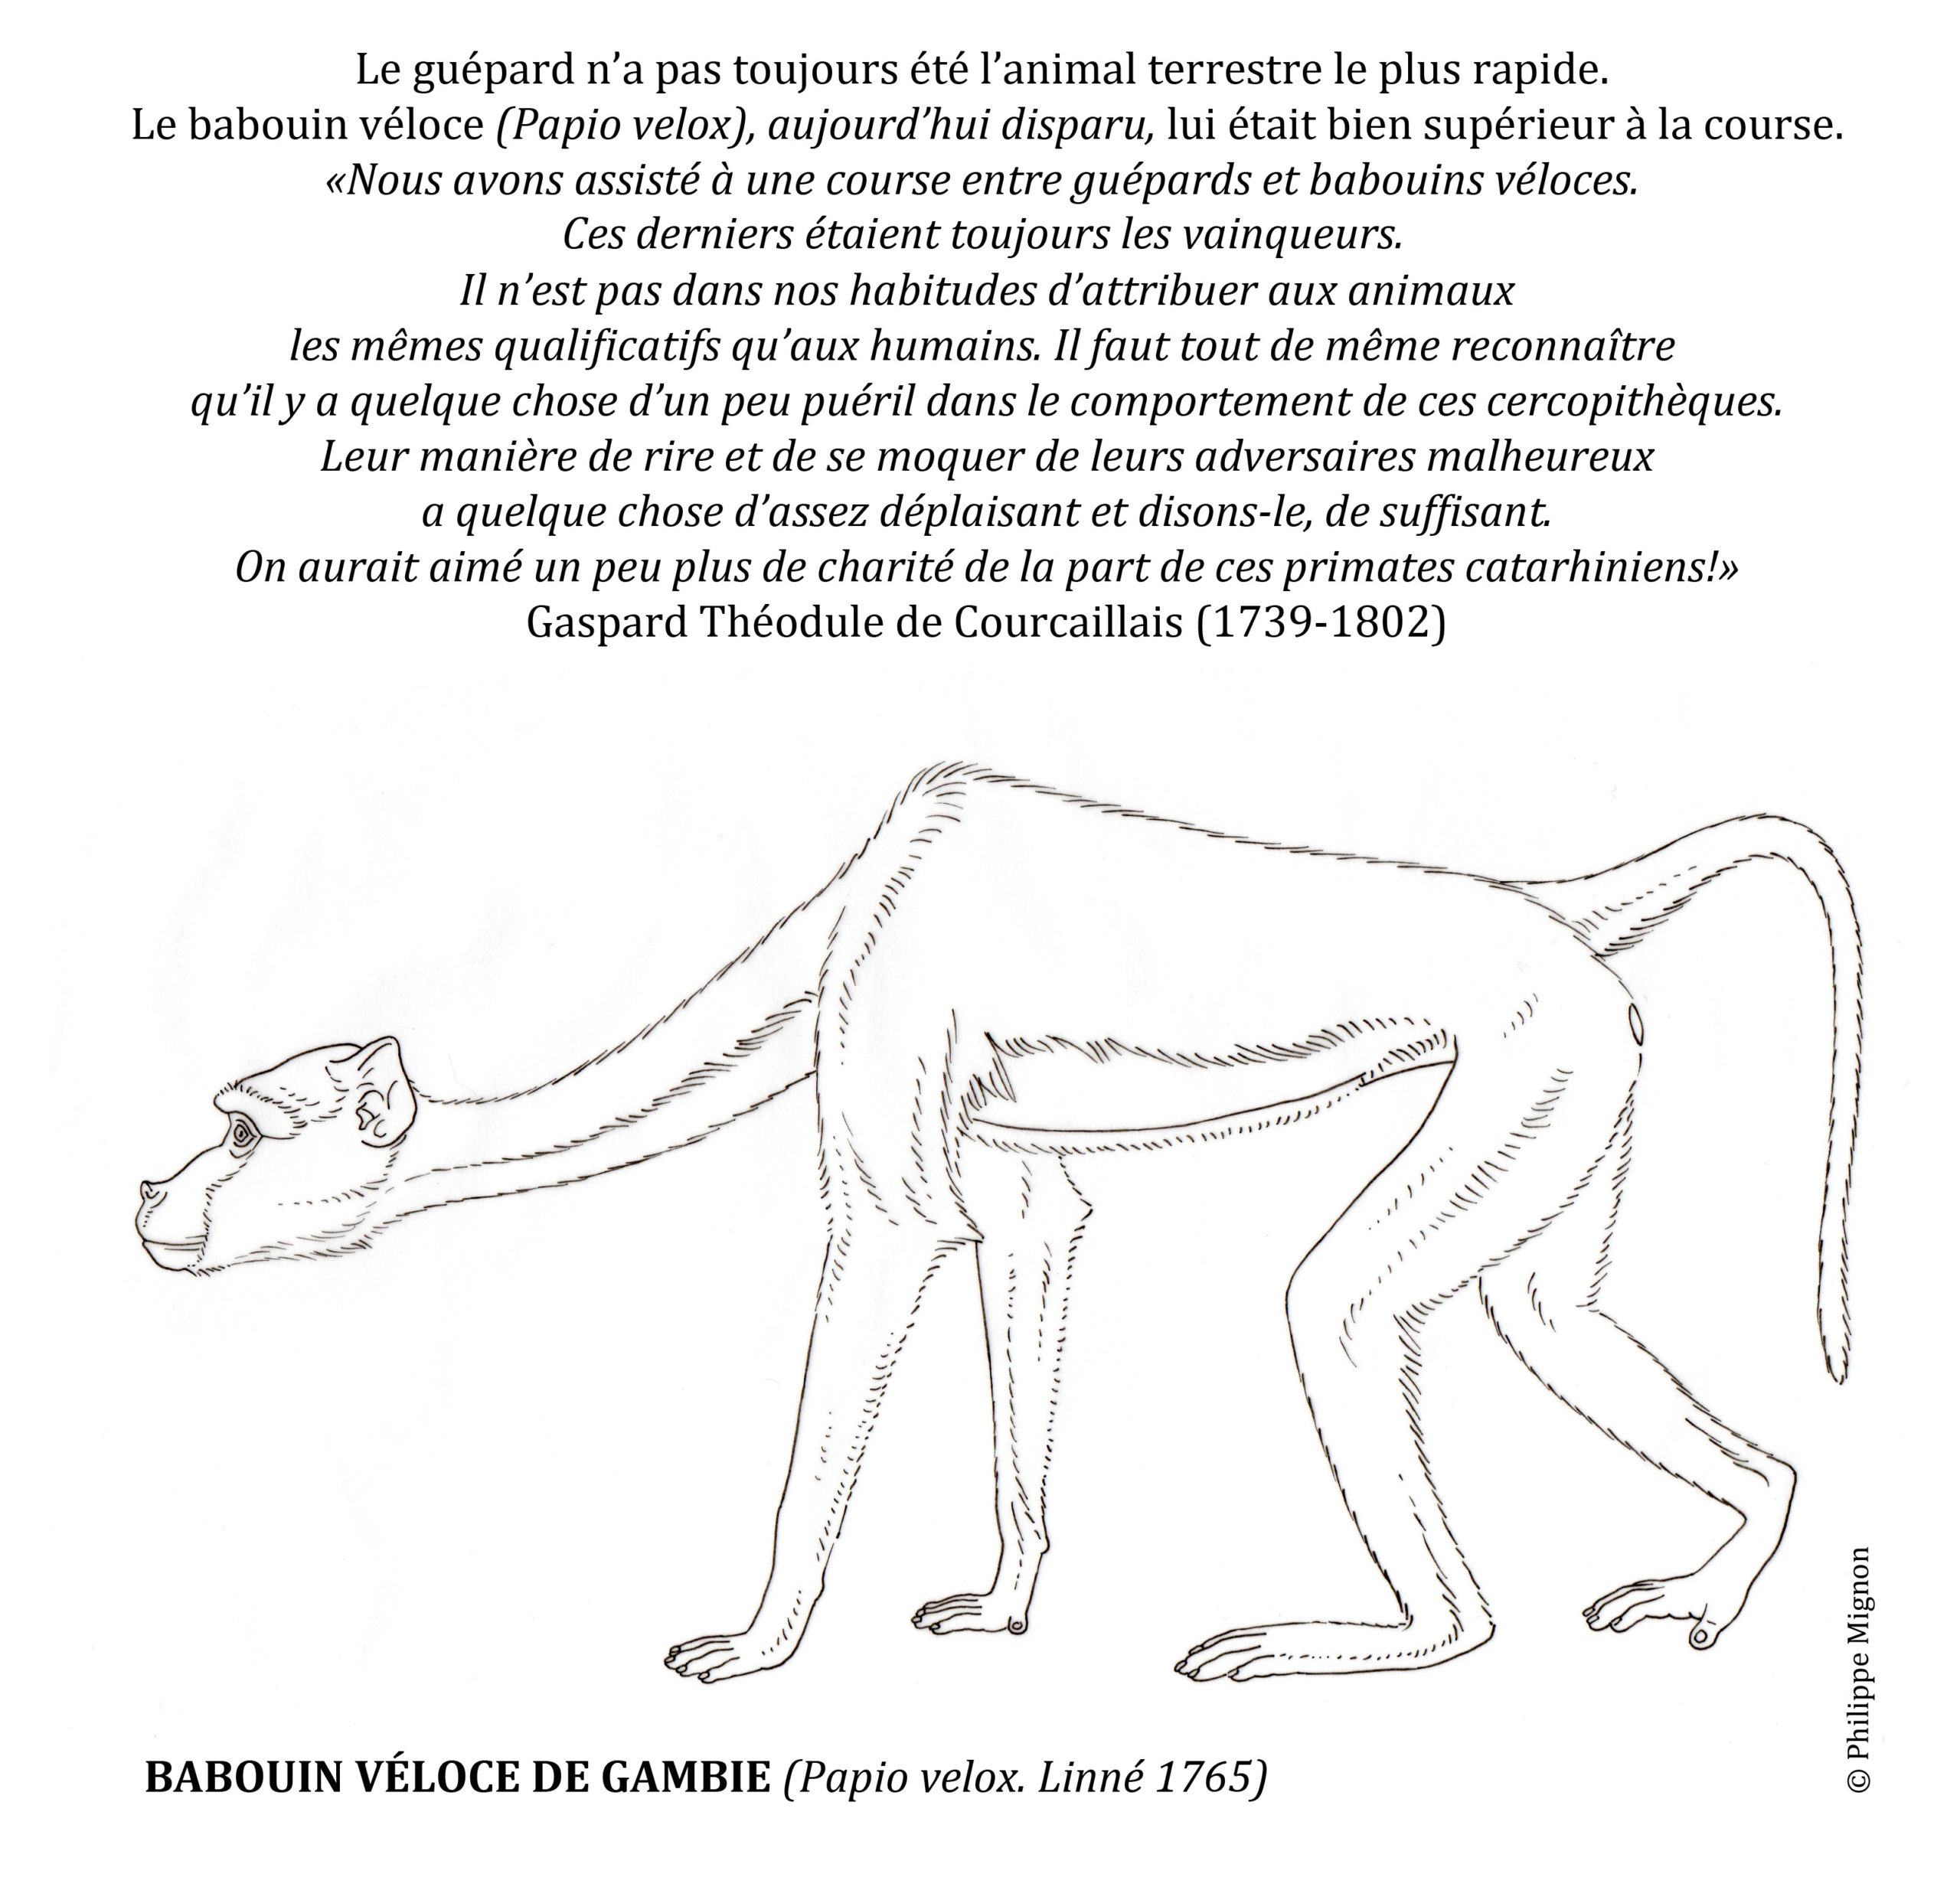 Le babouin véloce de Gambie